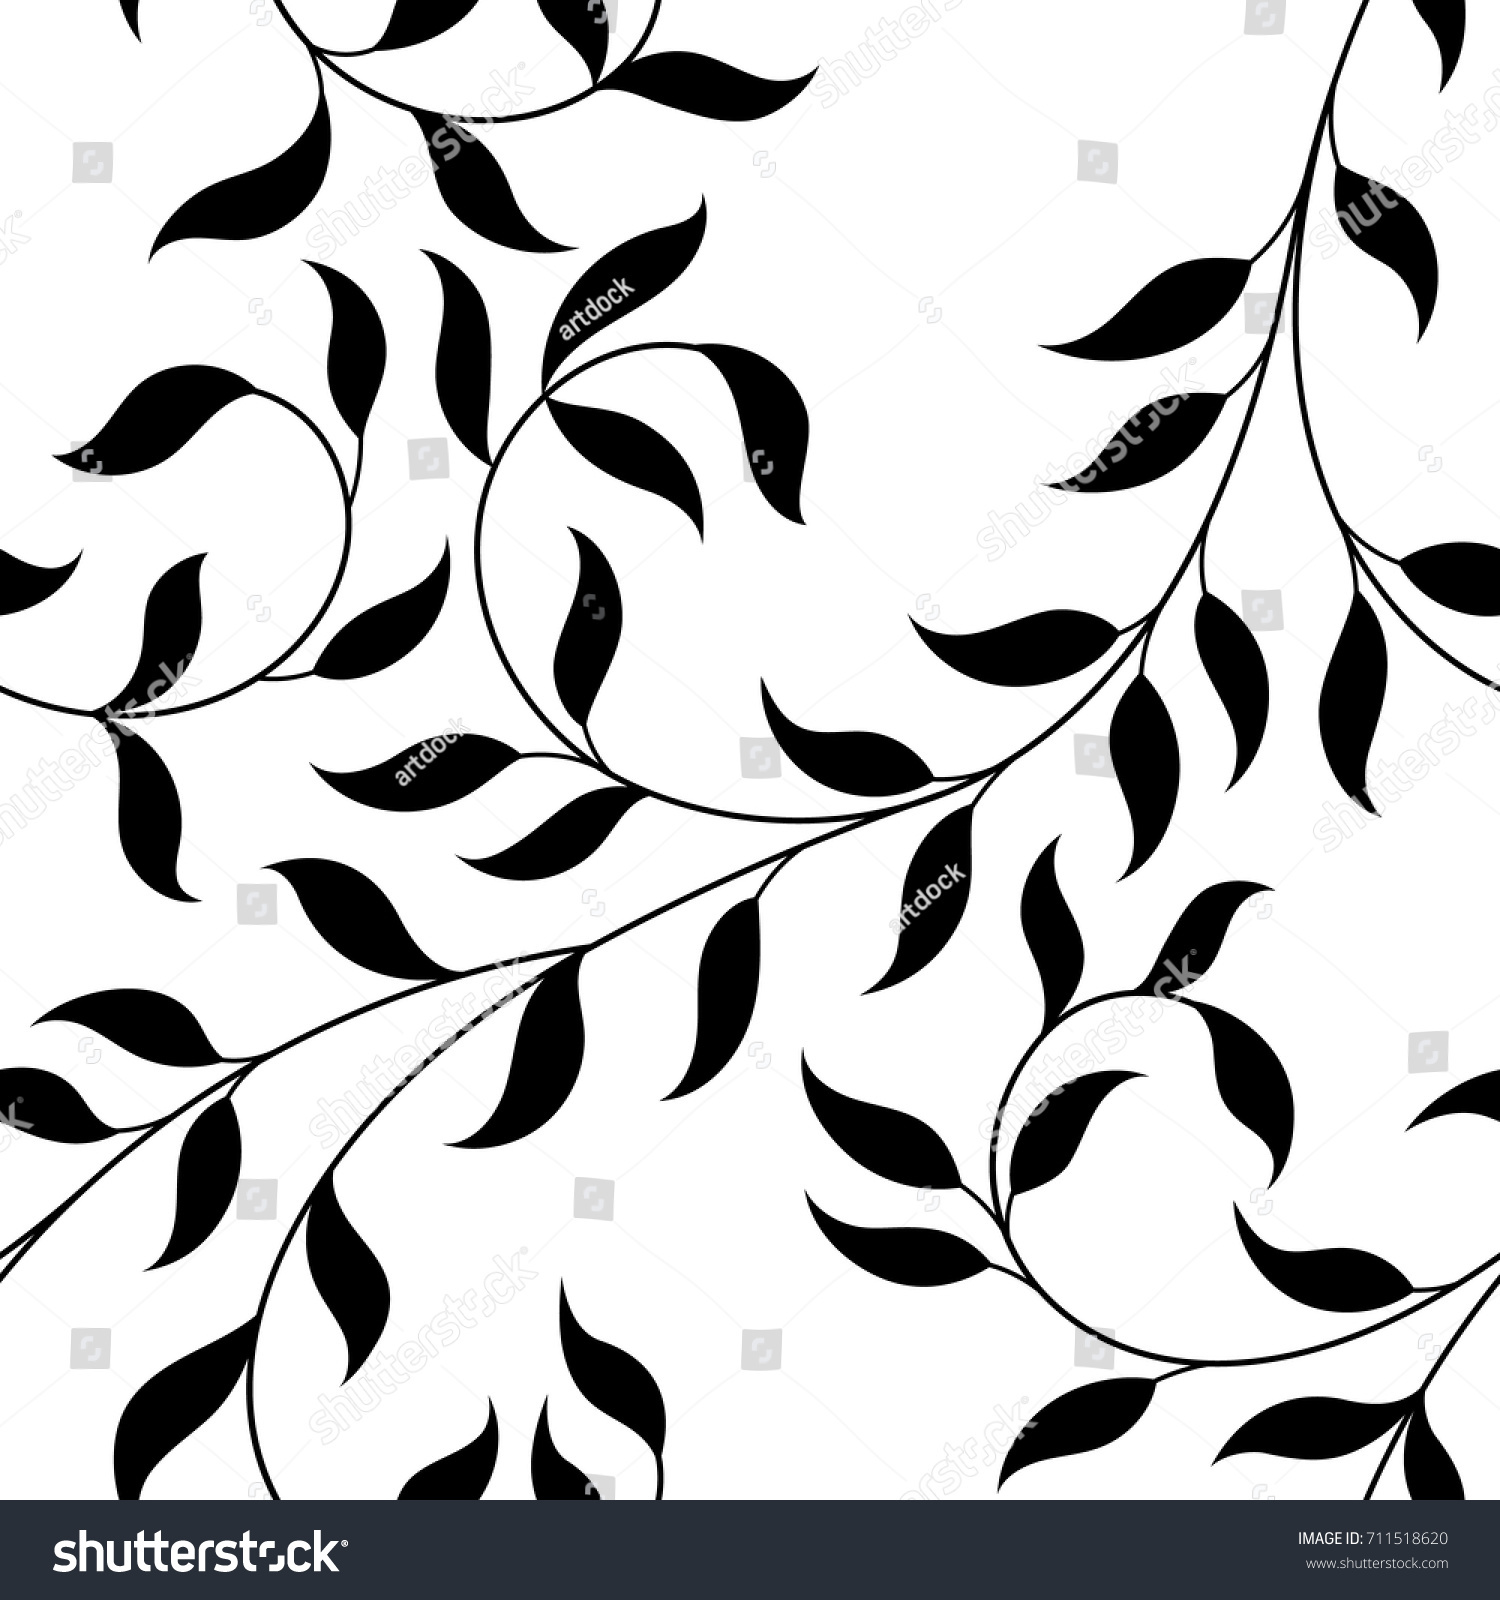 ベクターイラスト シームレスな模様 白黒の装飾的な巻き毛の枝と葉 のベクター画像素材 ロイヤリティフリー